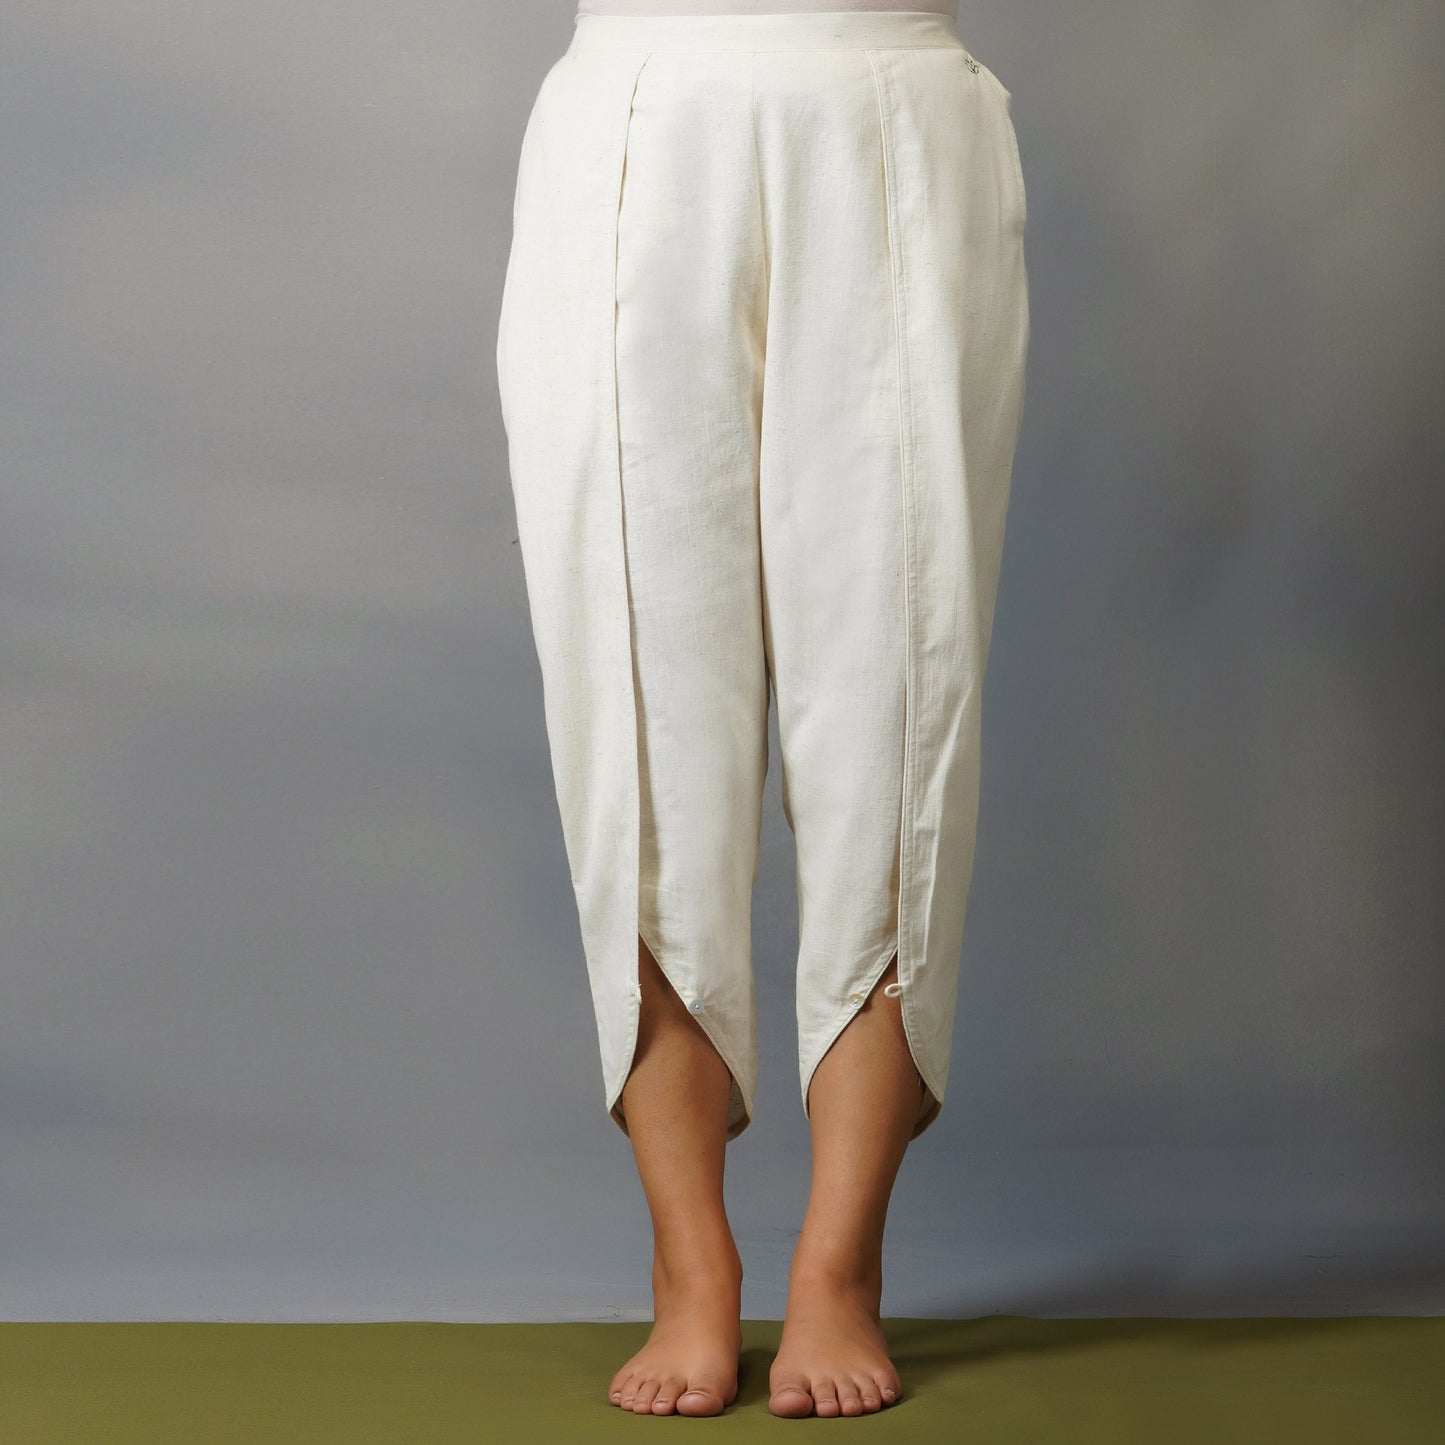 Surya Yoga Top and Pant Set